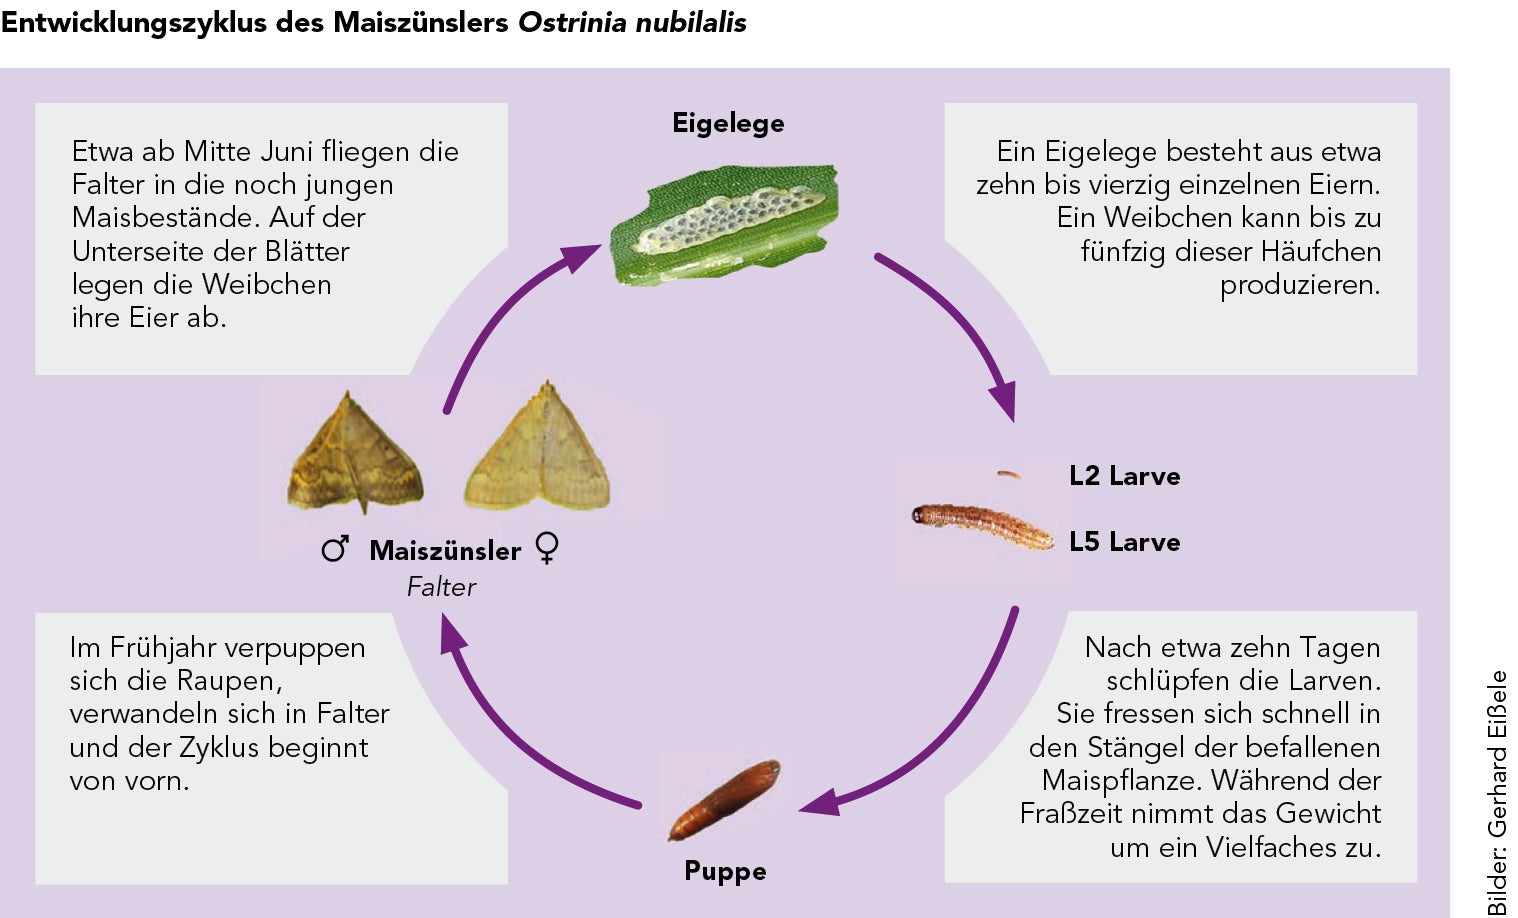 Der Entwicklungszyklus des Maiszünslers